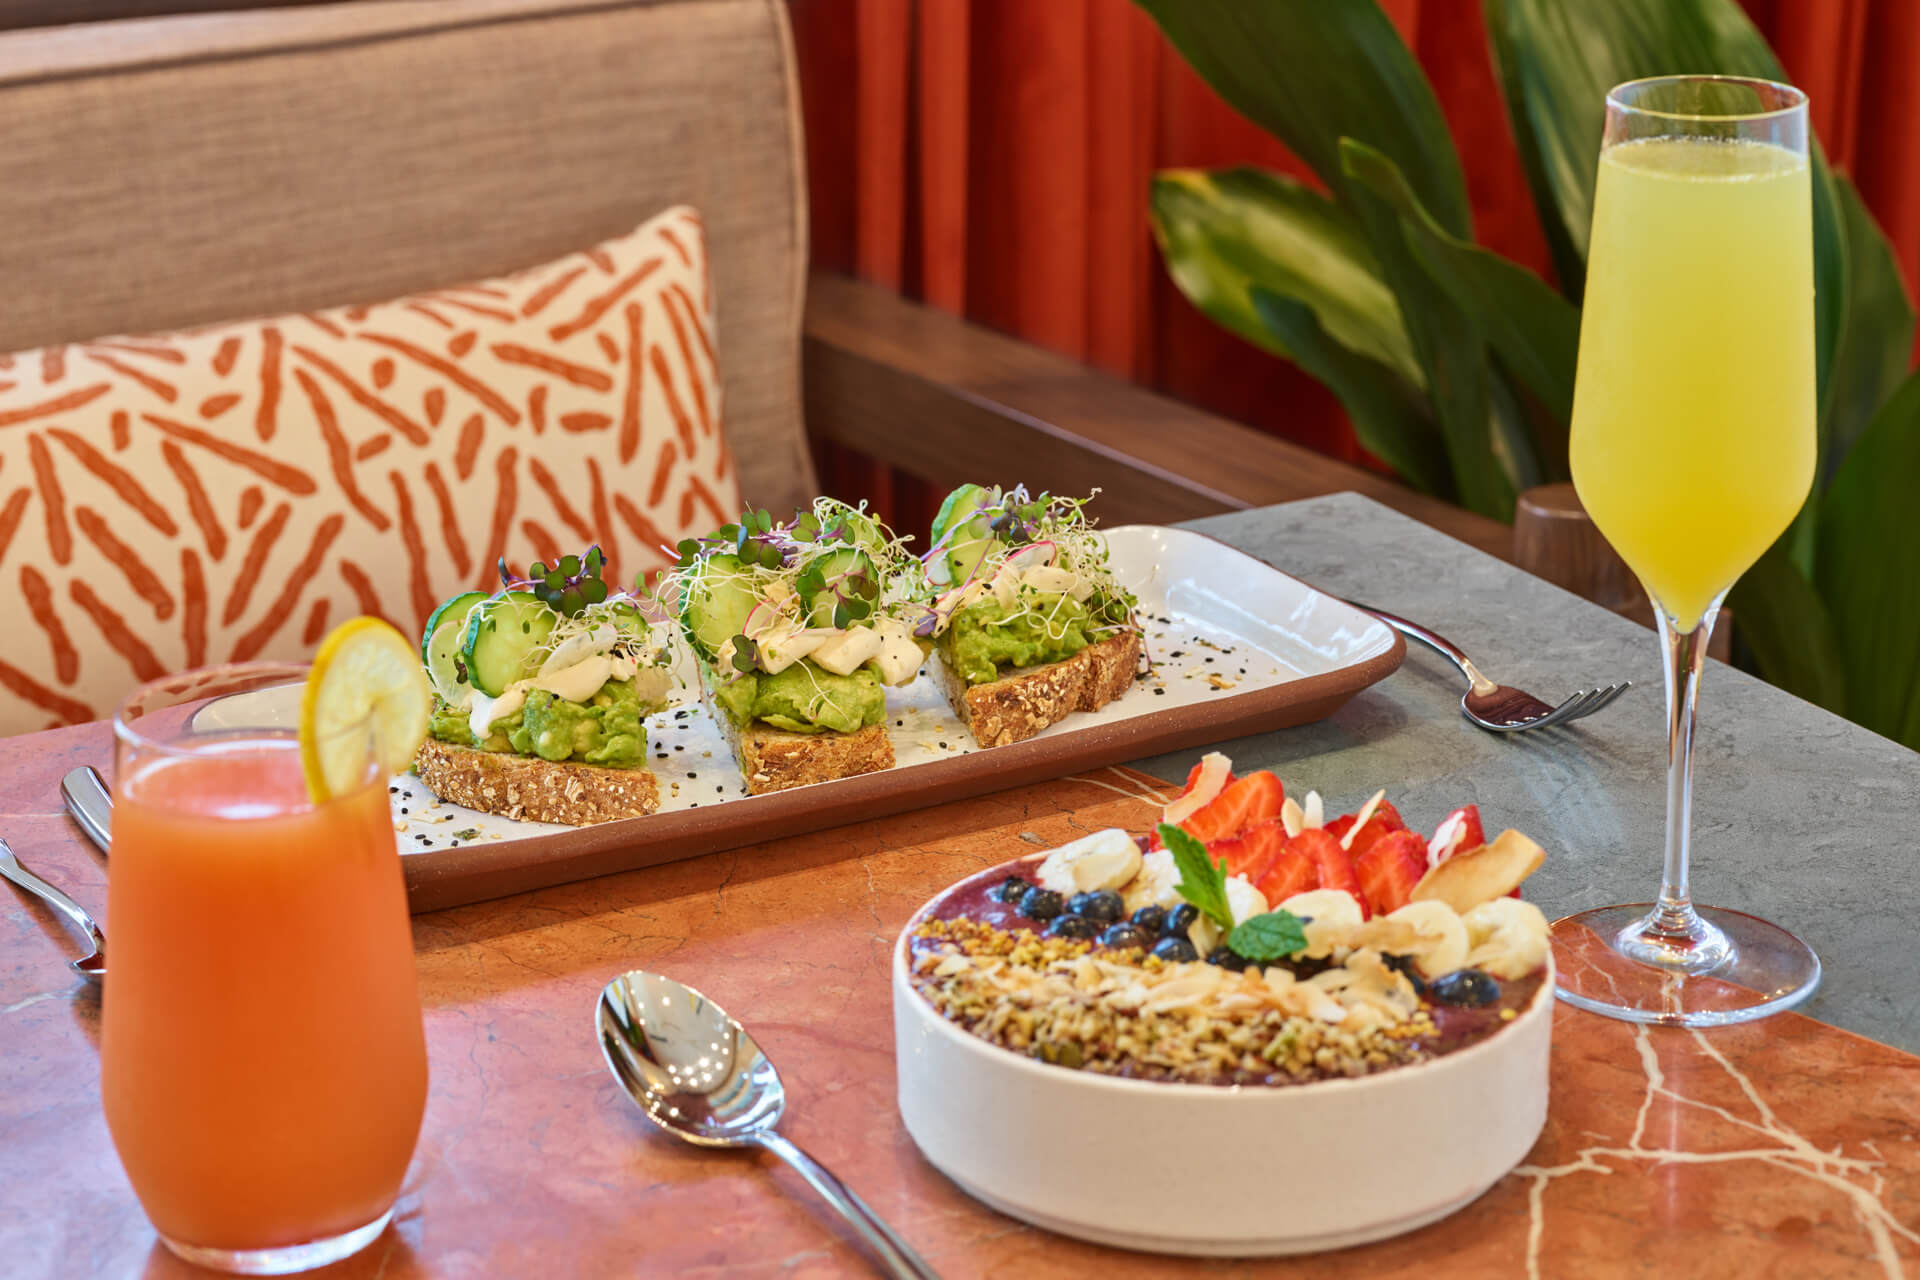 açai bowl and avocado toasts restaurant healthy menu